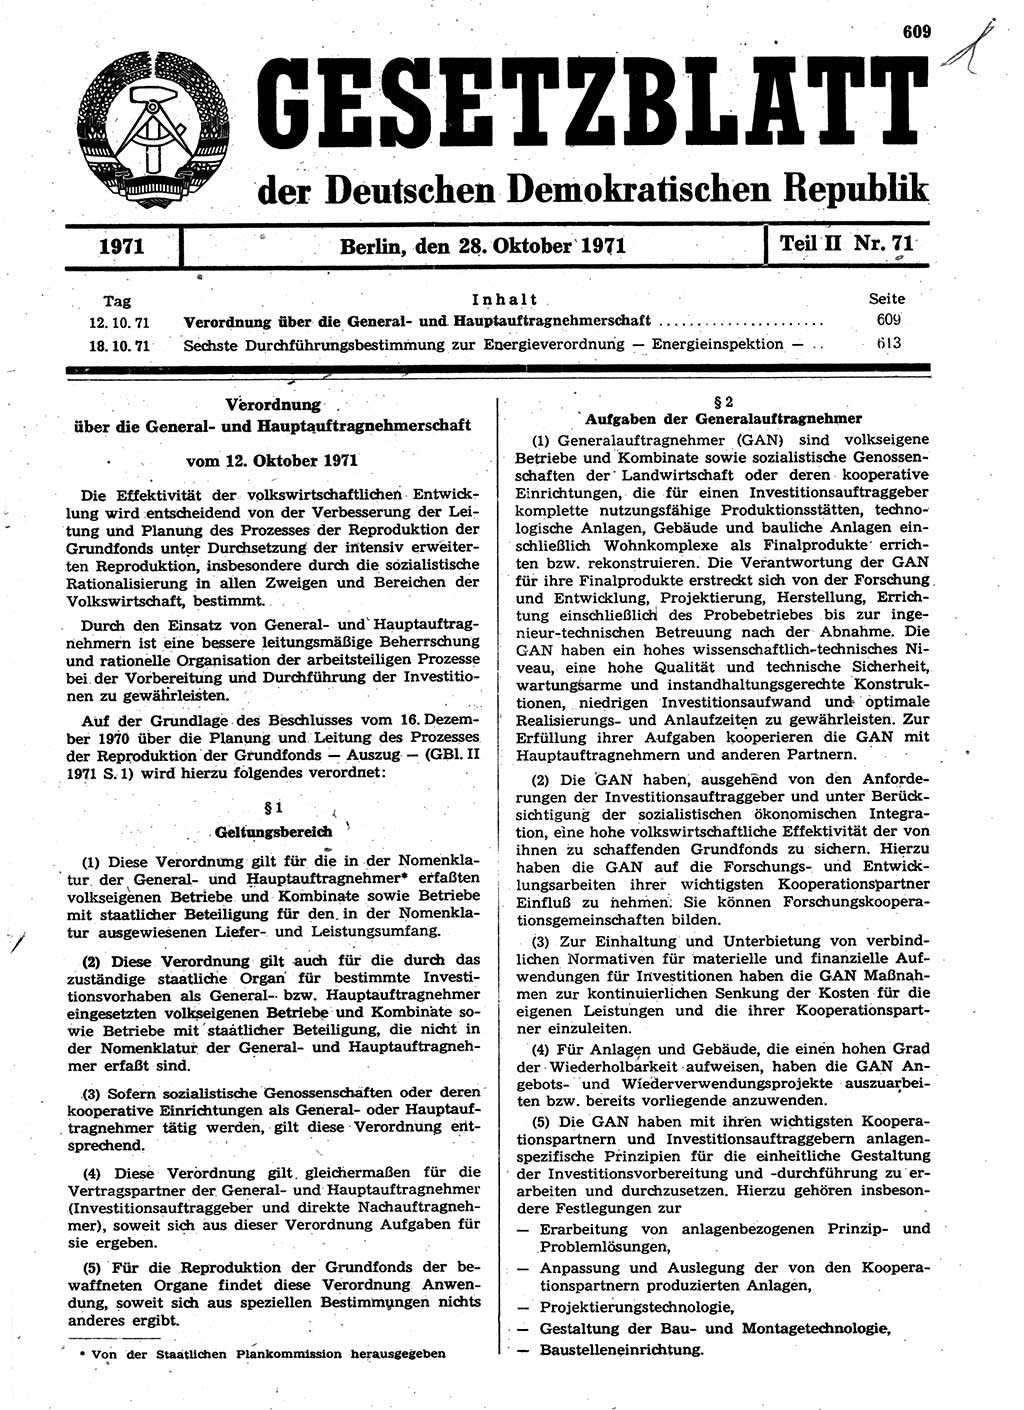 Gesetzblatt (GBl.) der Deutschen Demokratischen Republik (DDR) Teil ⅠⅠ 1971, Seite 609 (GBl. DDR ⅠⅠ 1971, S. 609)